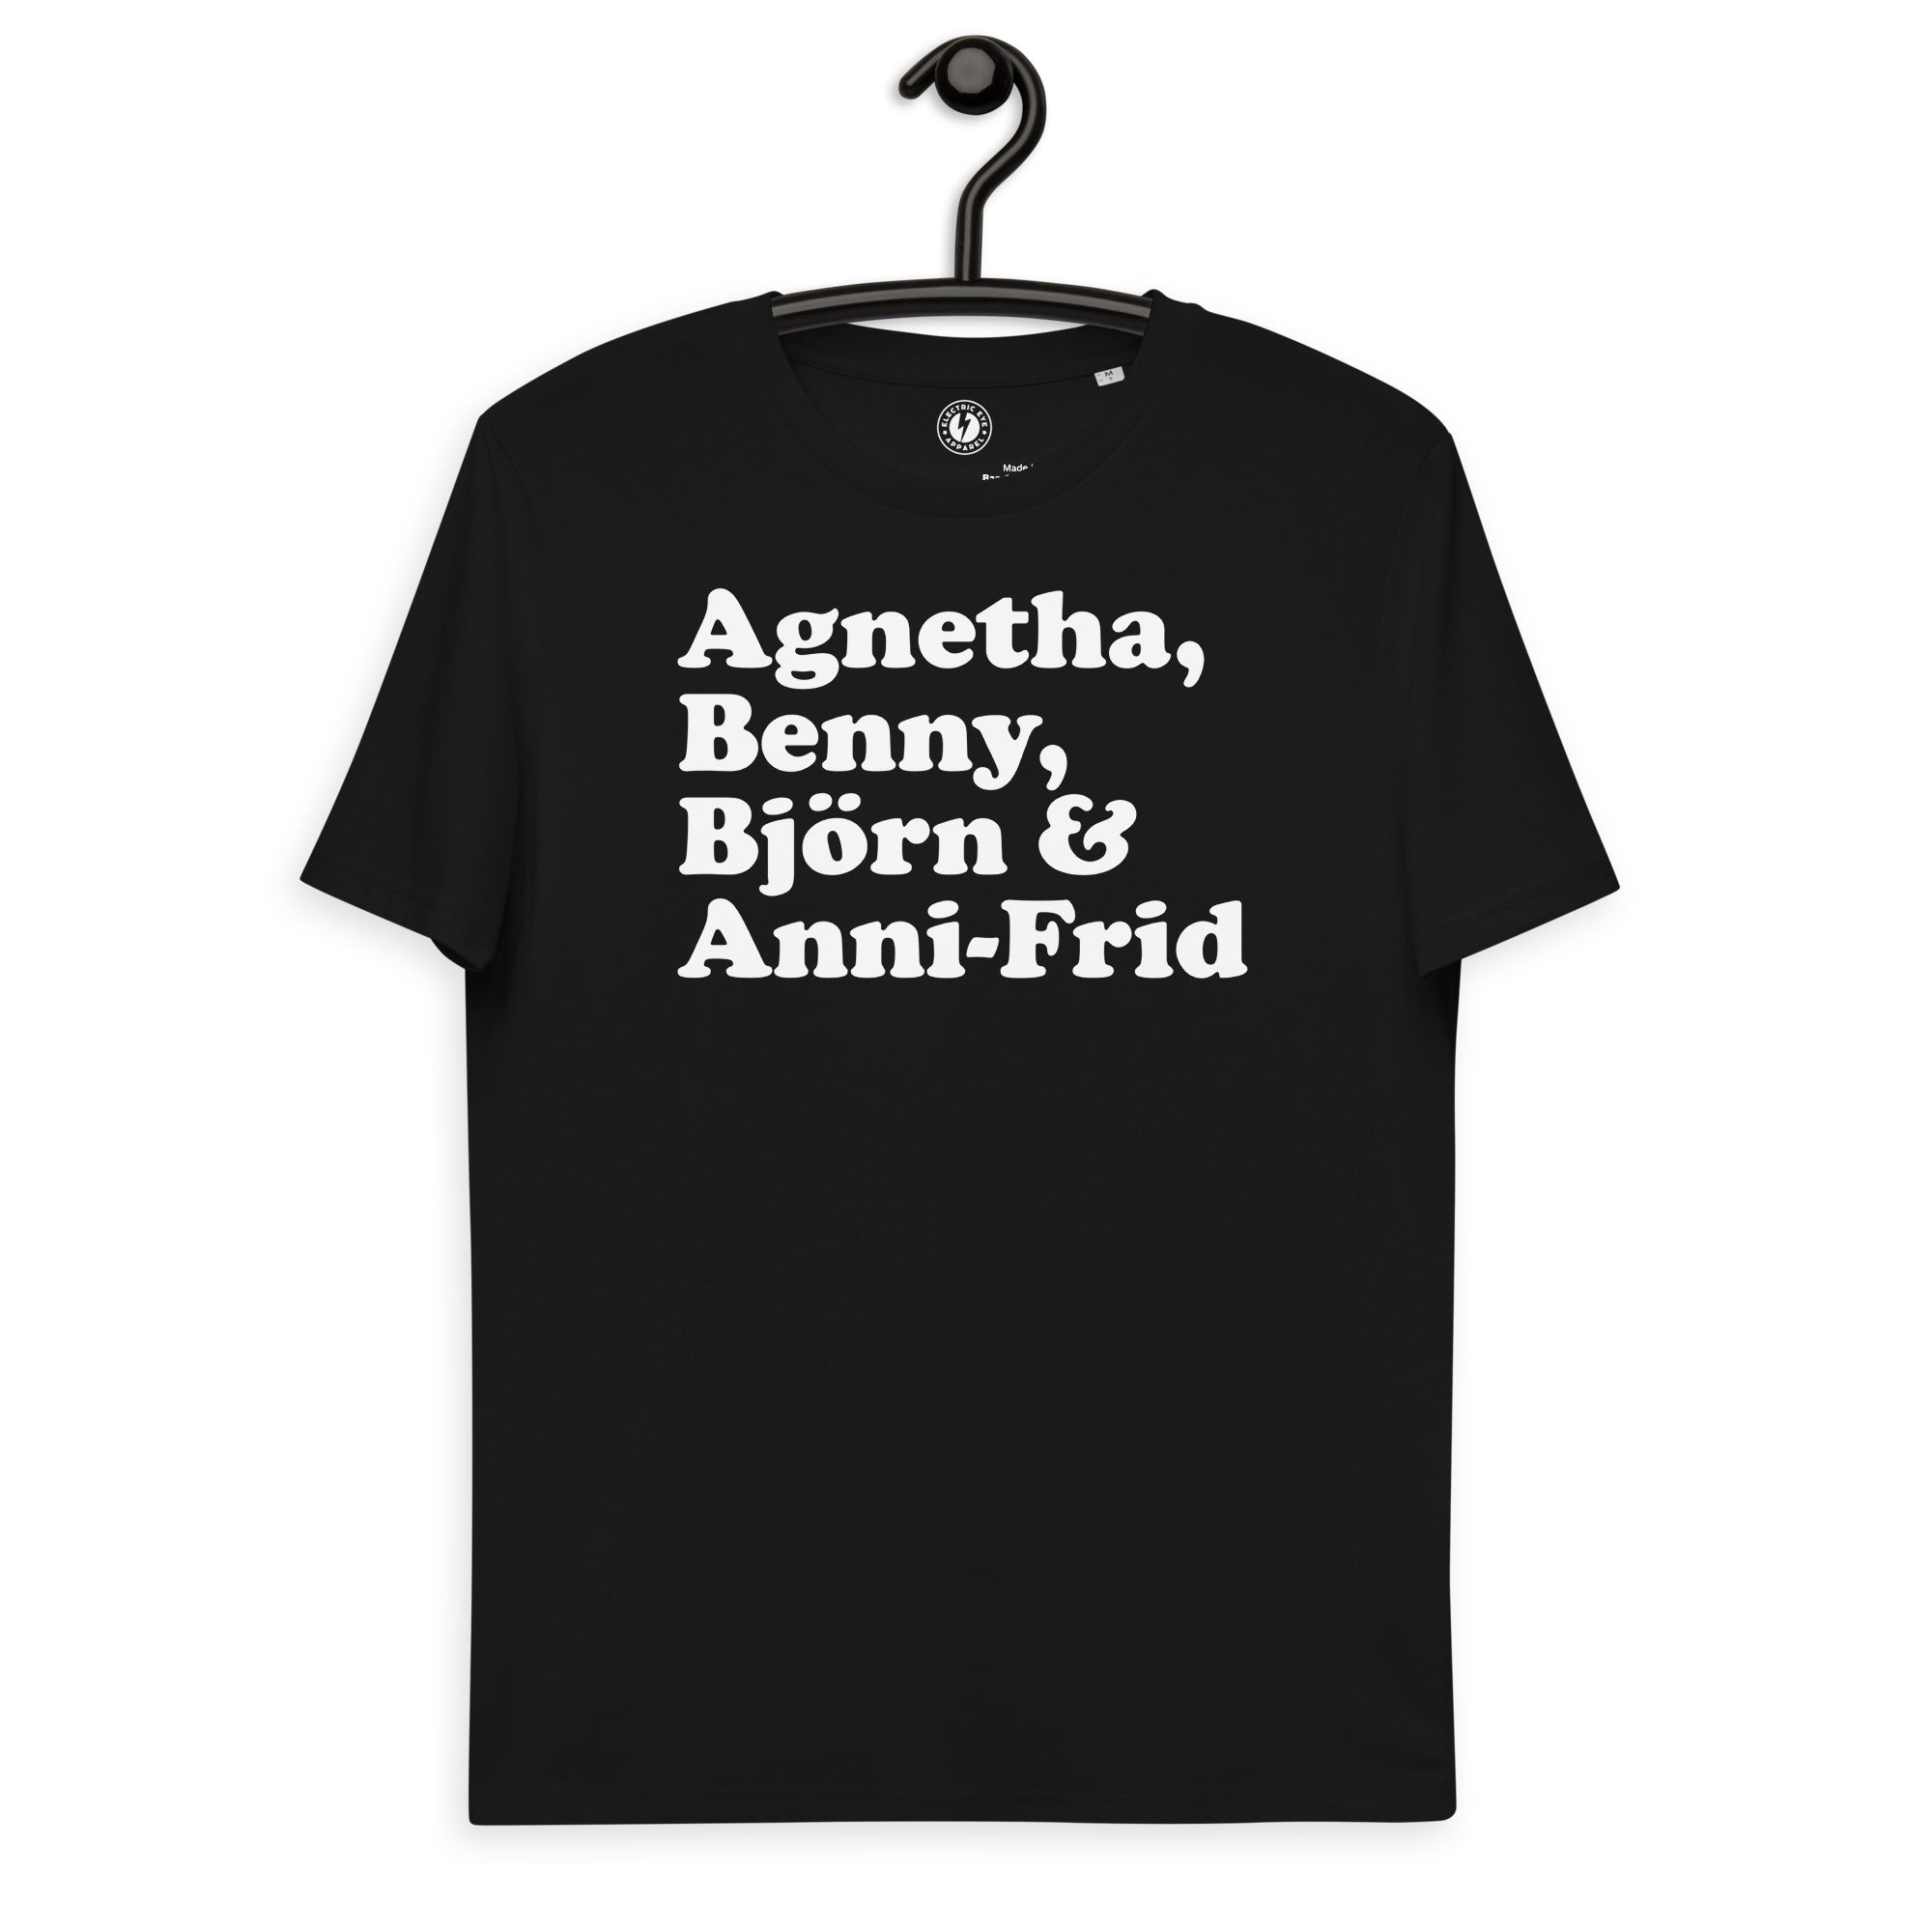 Agnetha、Benny、Bjorn 和 Anni-Frid - 乐队成员姓名 - 优质印花男女通用有机棉 T 恤